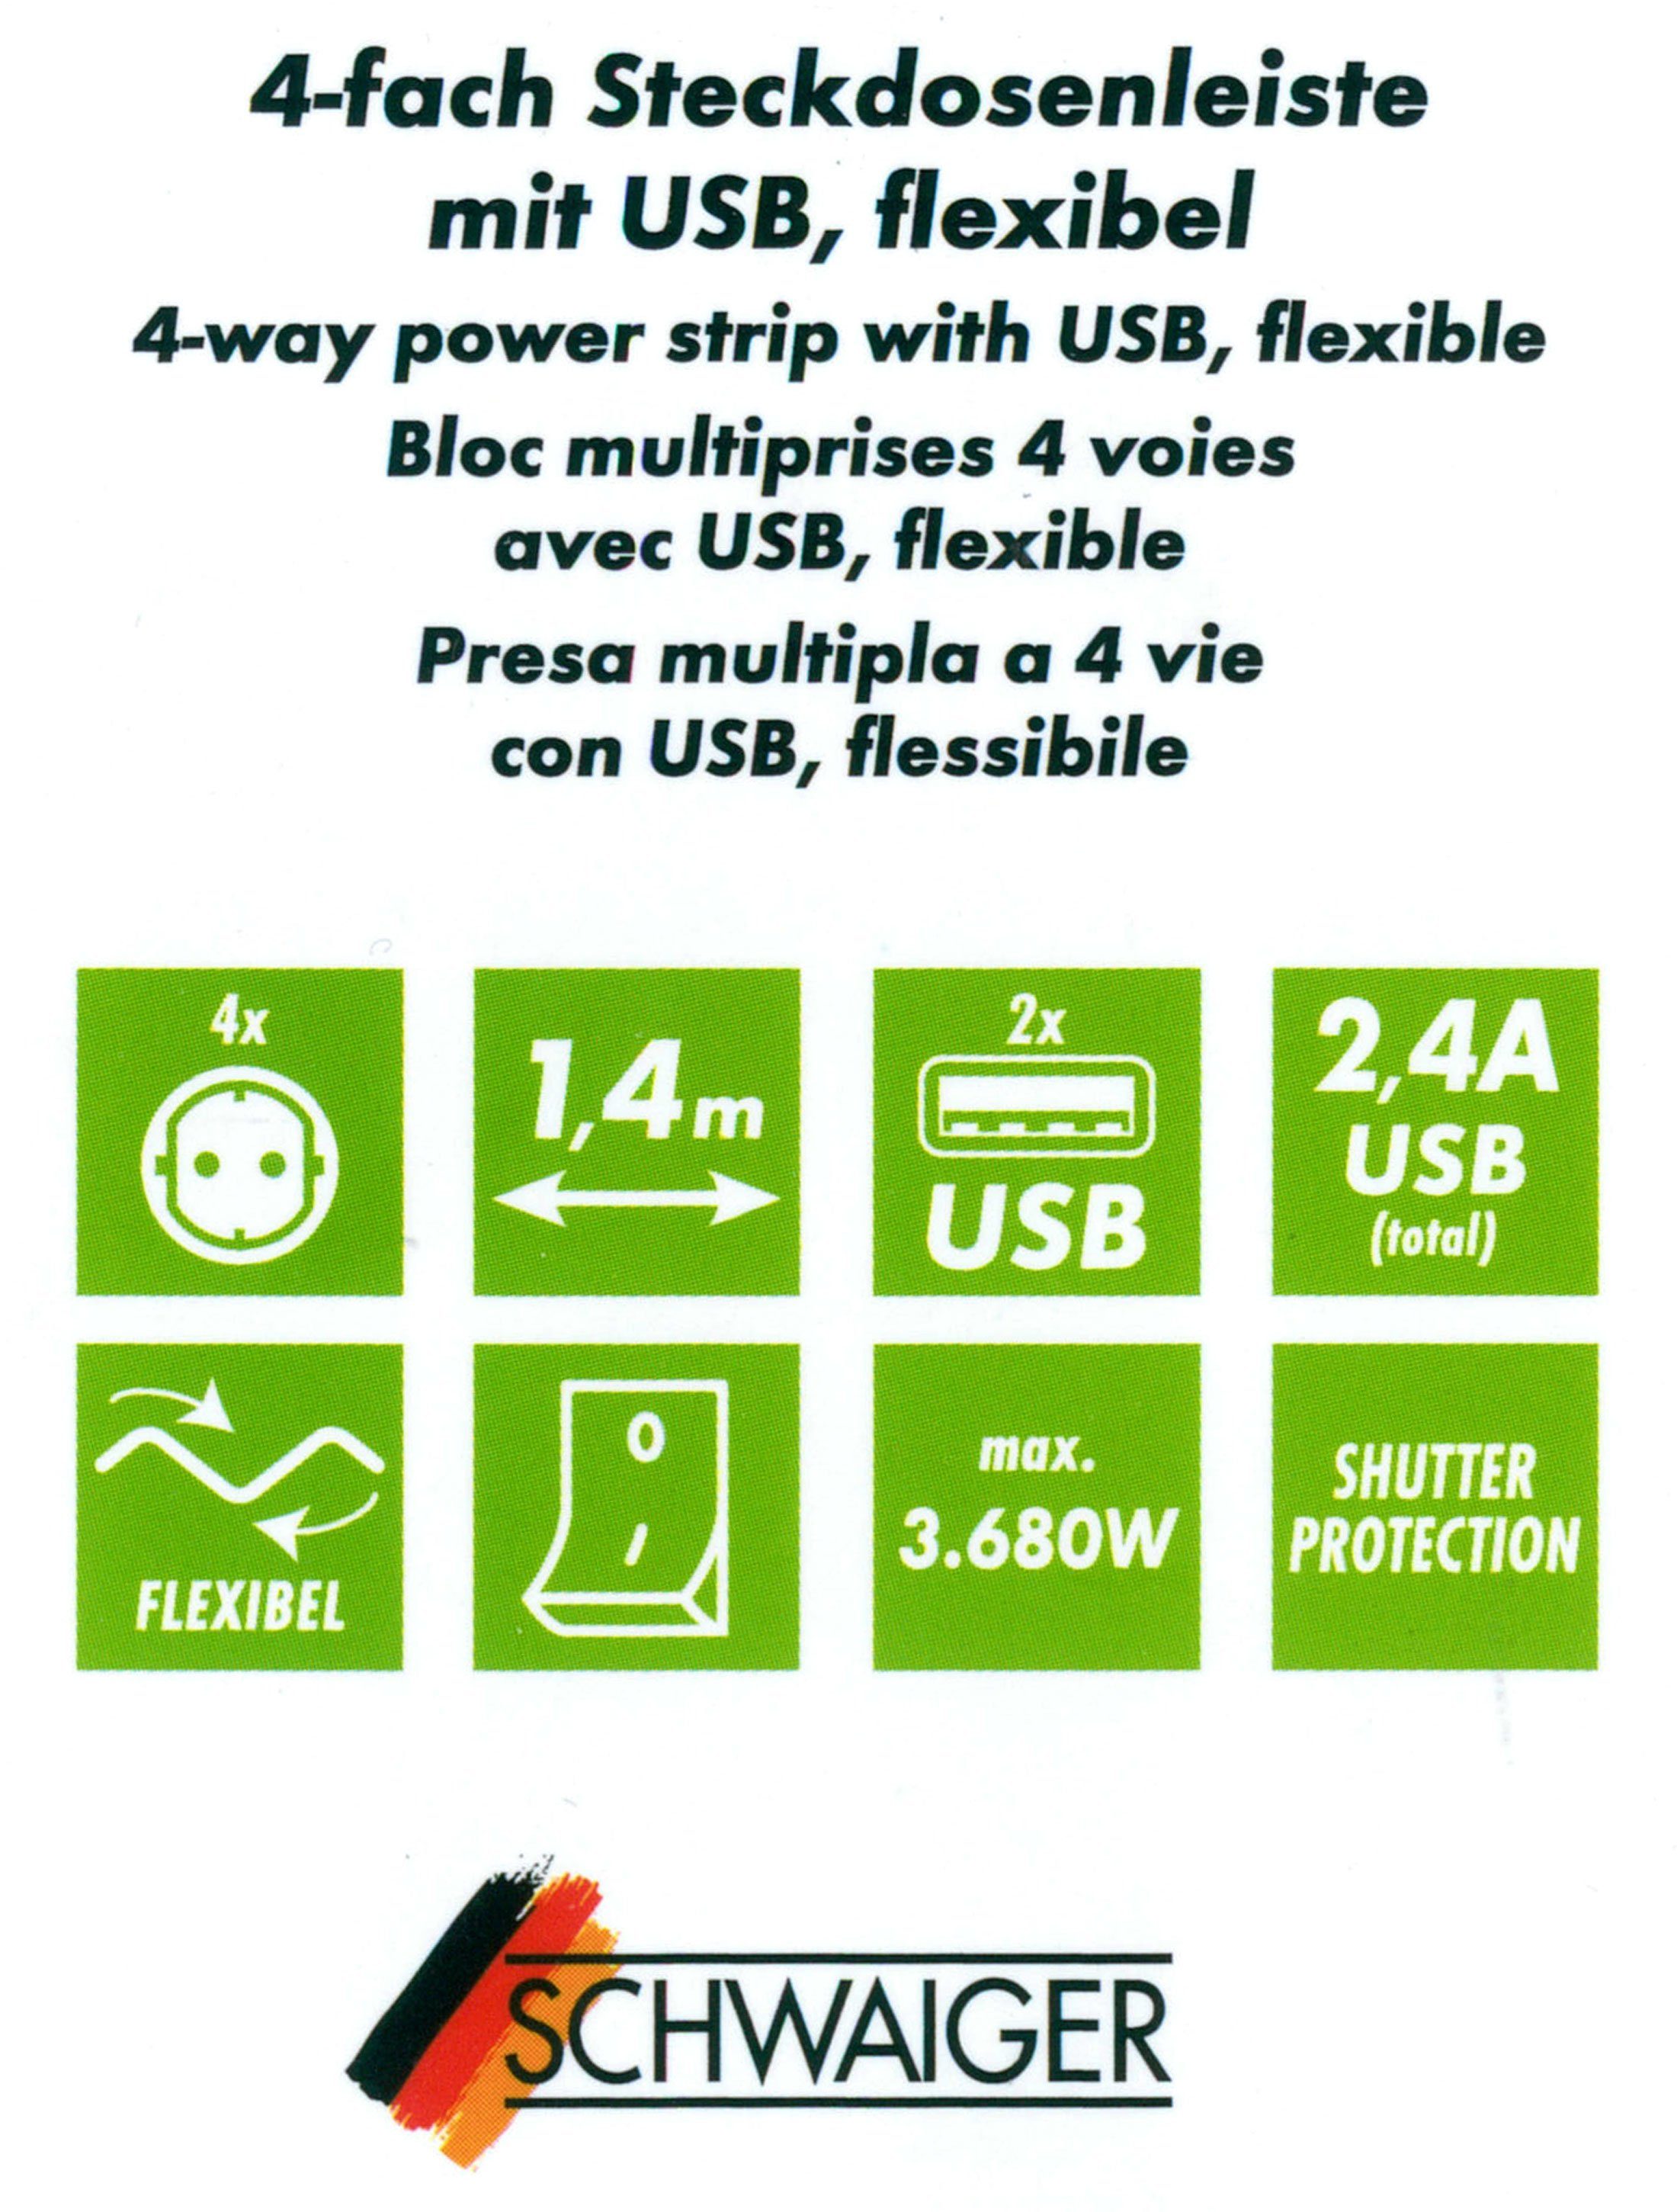 2 schwarz USB Steckdosenleiste x 2 Einsatz, Ein- (4,2A) (Ein- 12w kabel), Mehrfachstecker inkl. Schwaiger Ausschalter, separate Schalter Mehrfachsteckdose 4-fach 1,5M USB-Anschlüsse, / USB x Flexible Ausschalter, Schalterbeleuchtung, /